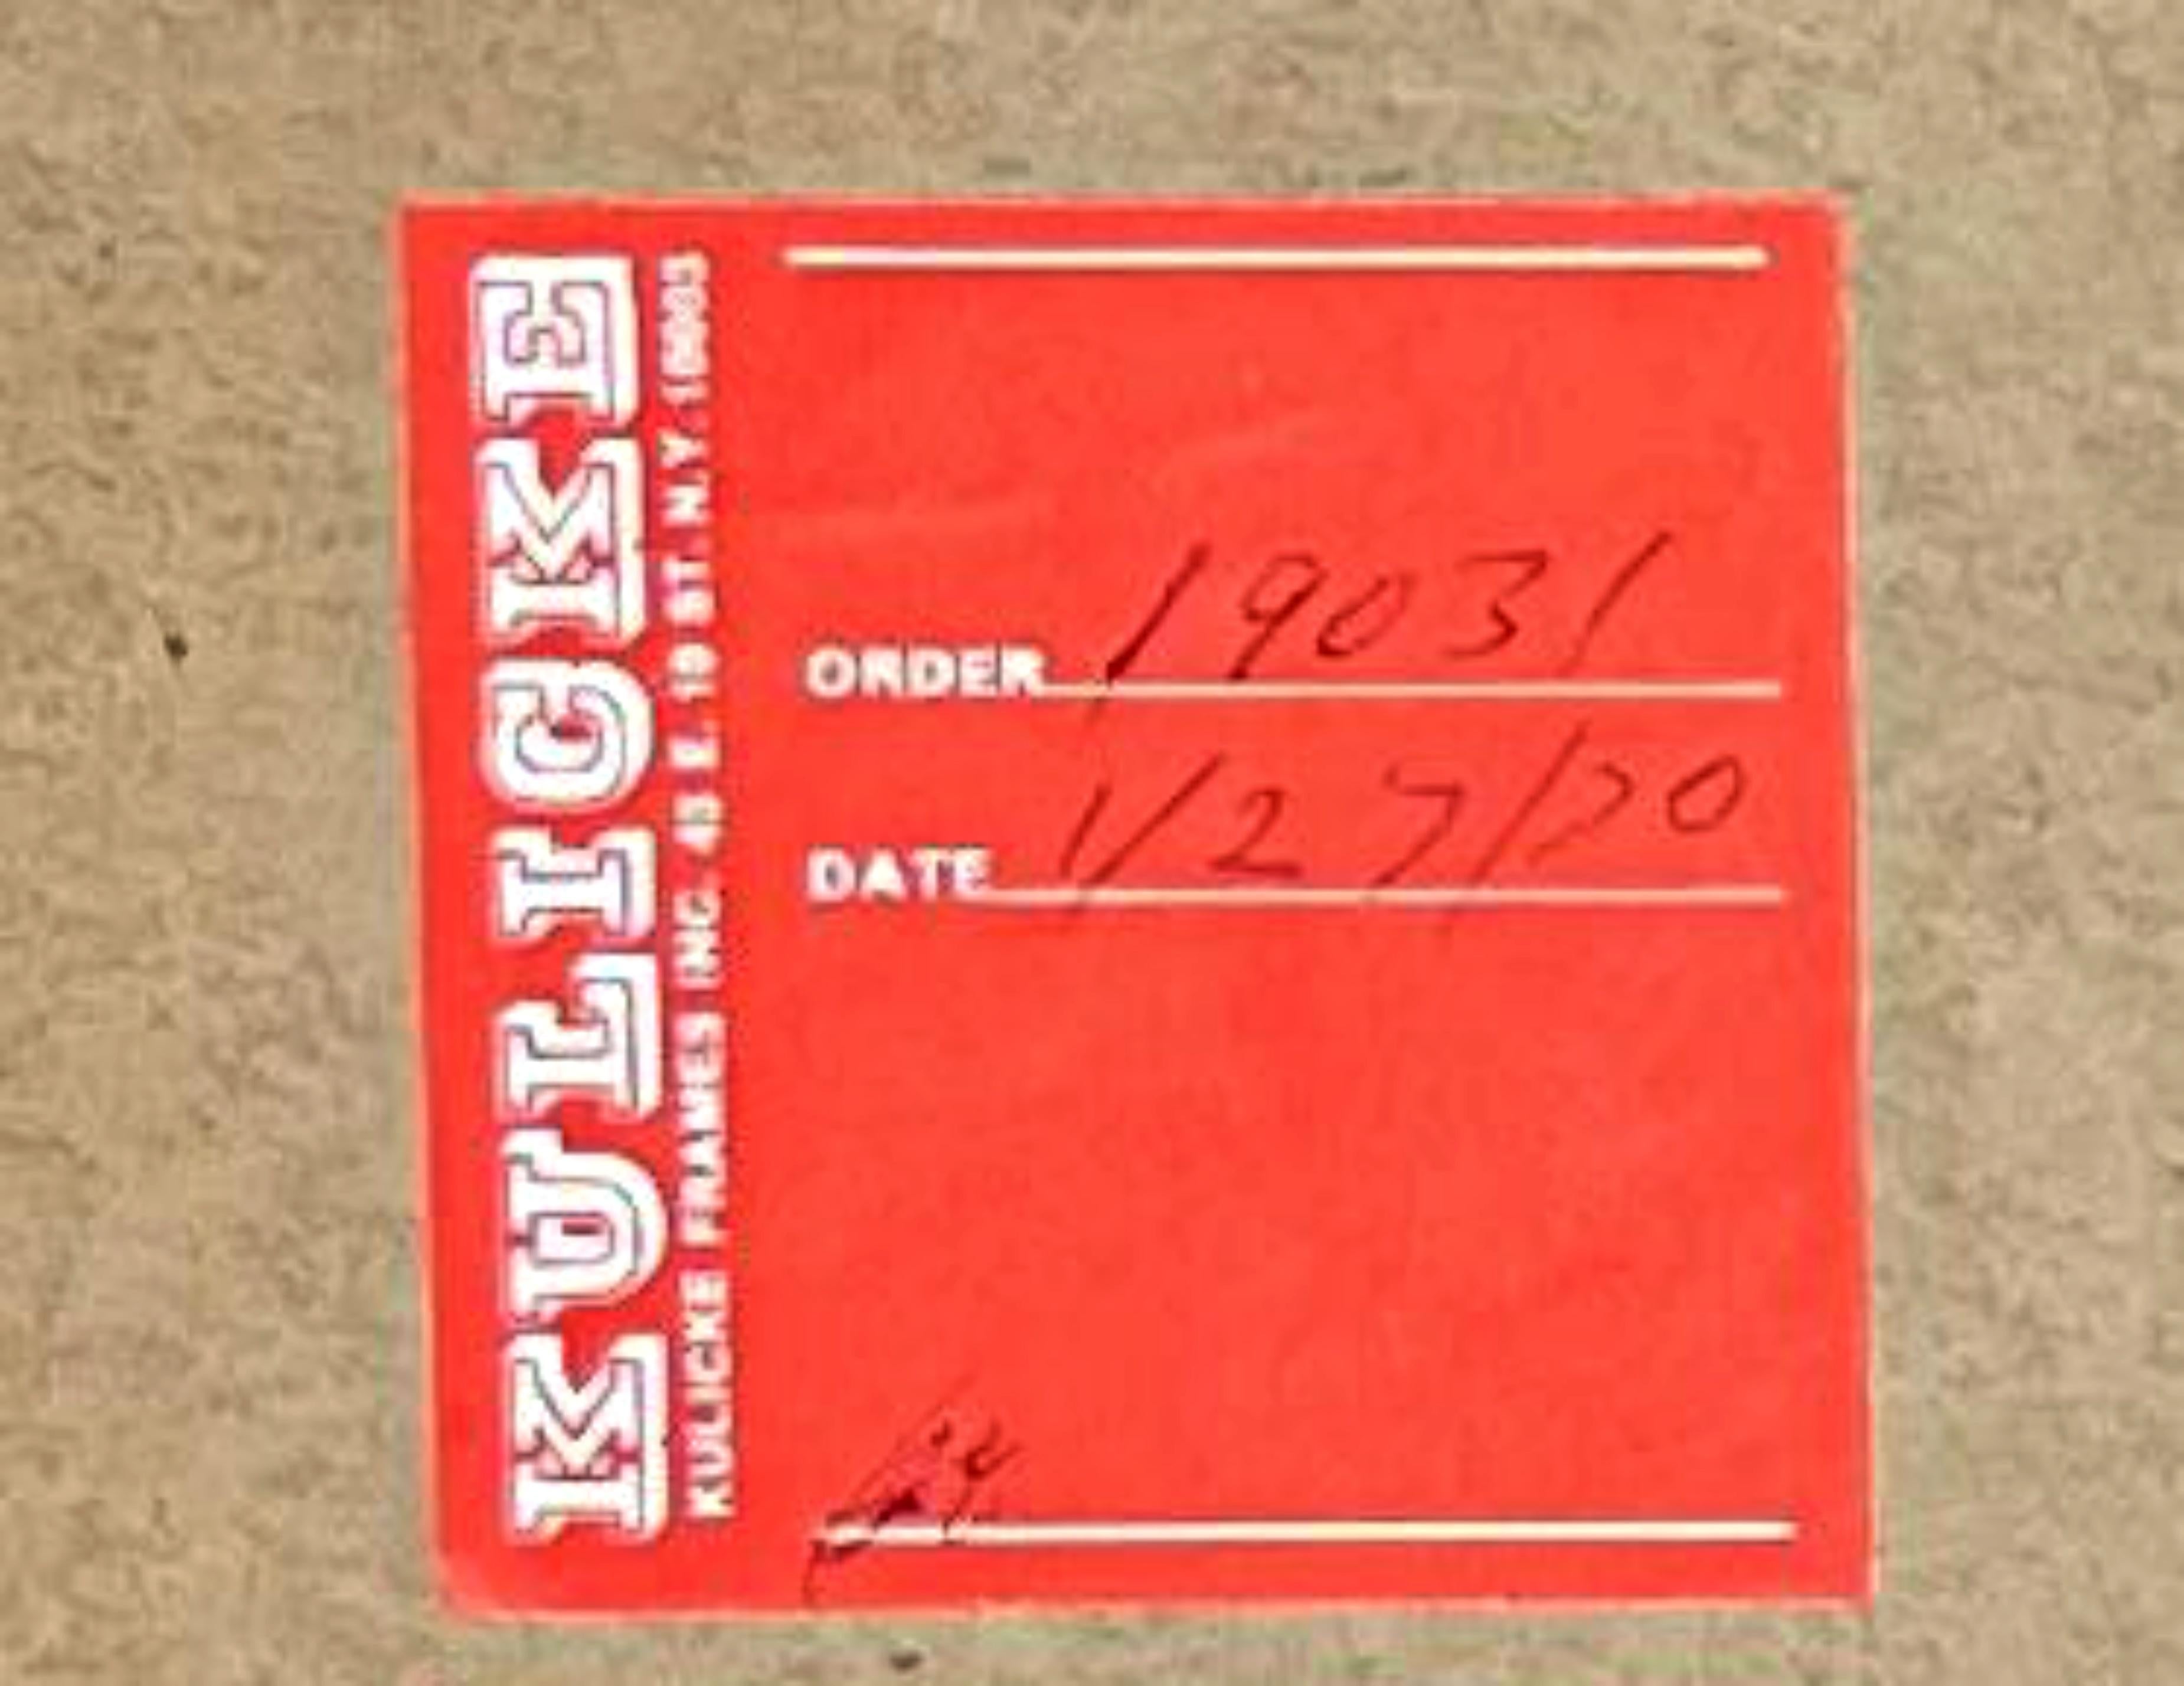 Doug Ohlson
Abstraction géométrique sans titre, 1968
Sérigraphie couleur sur papier vélin
Signé à la main, daté et numéroté 15/50 au recto.
Cette éblouissante sérigraphie Op Art/ Abstraction géométrique des années 1960 est encadrée sur les bords